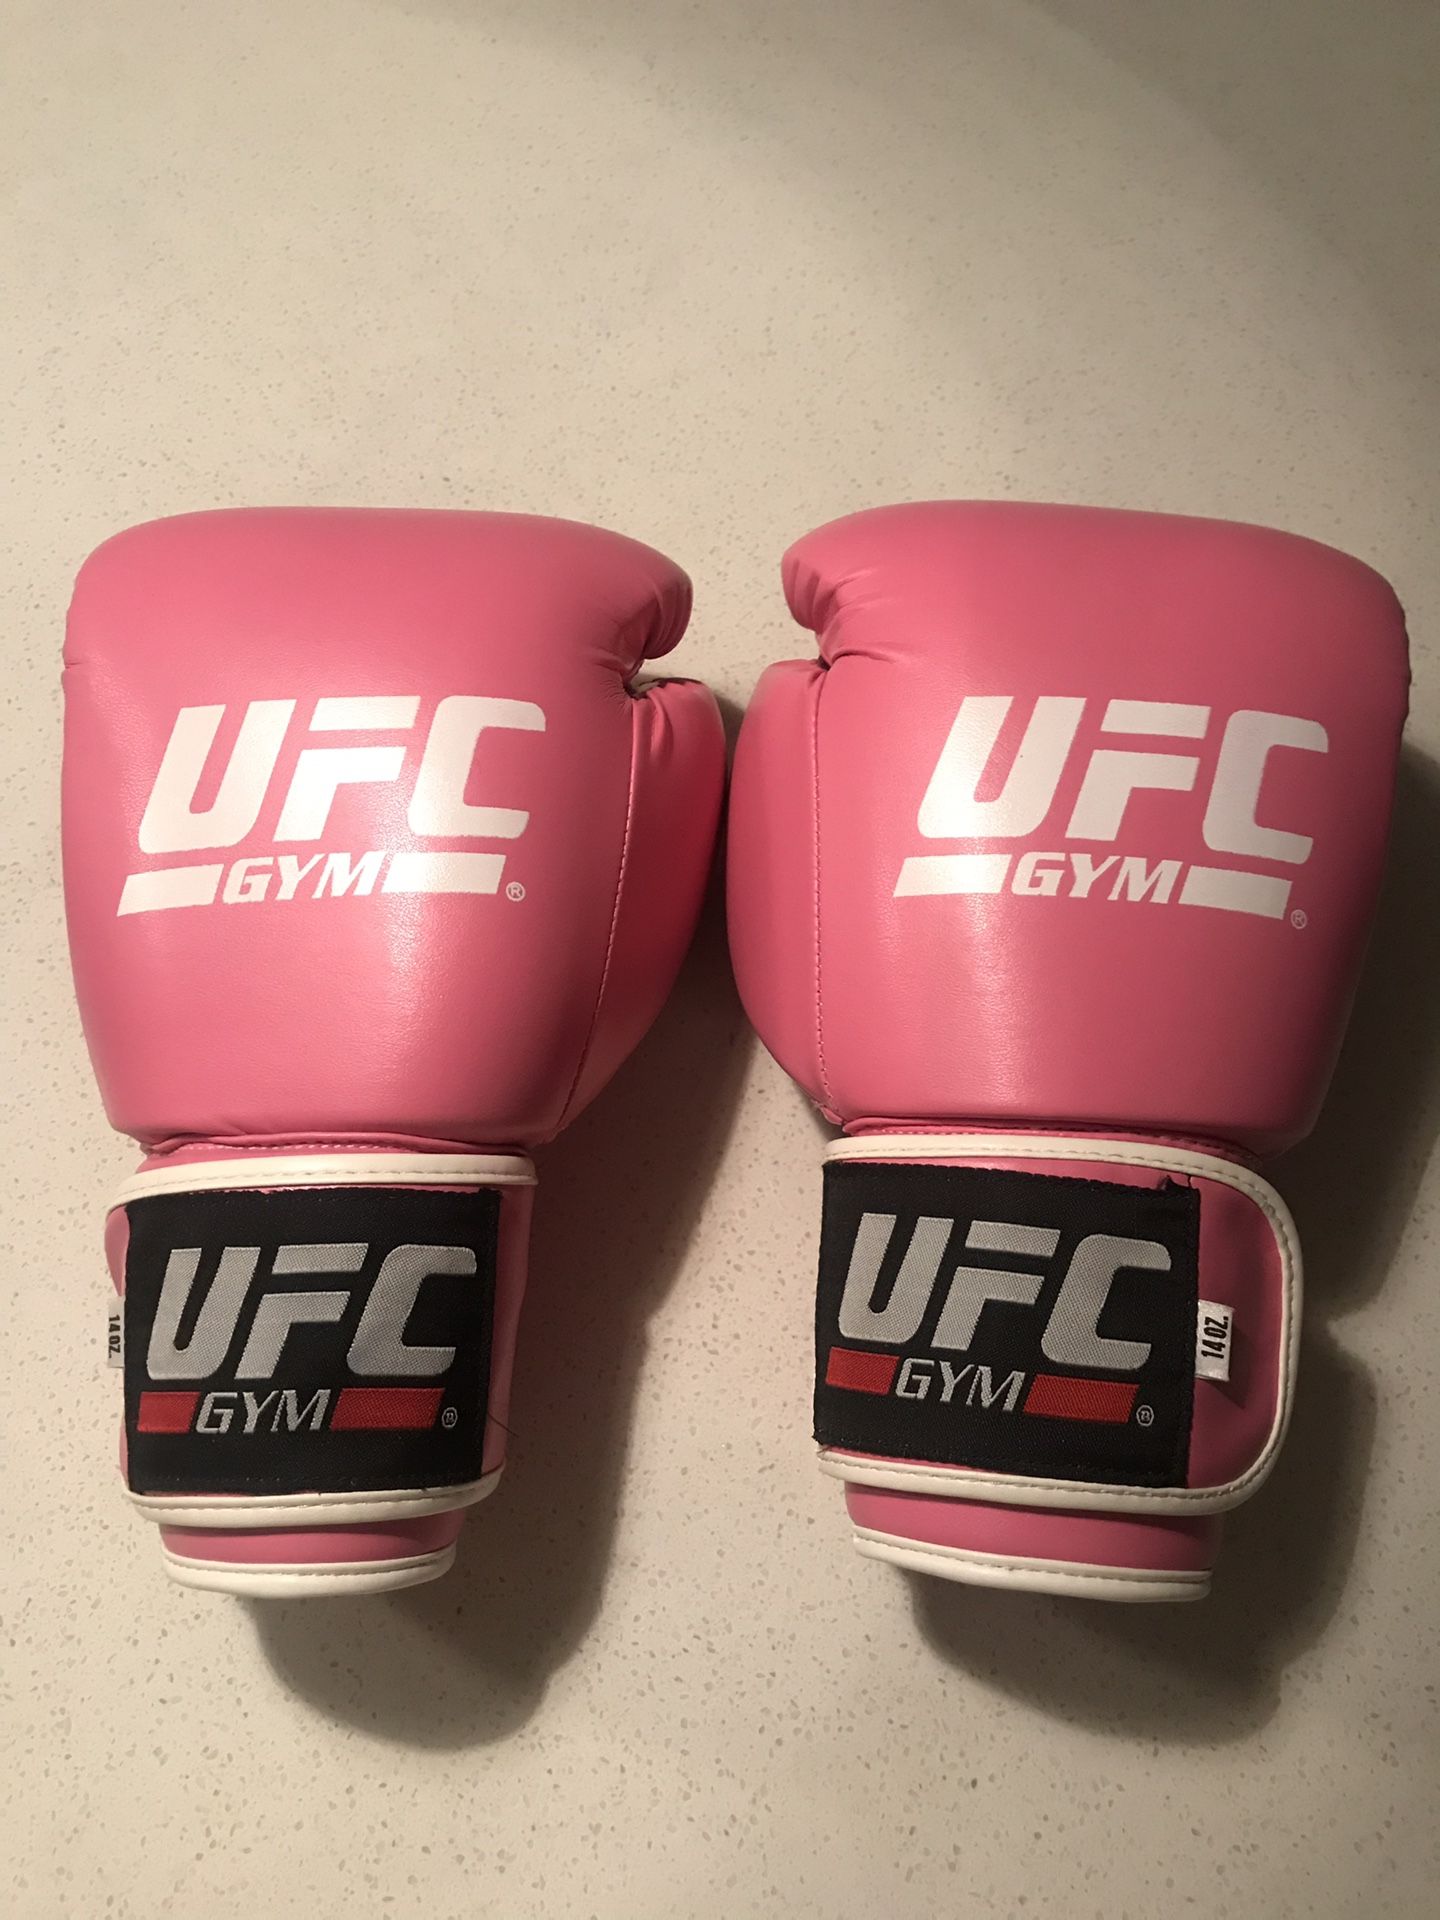 UFC Gym Gloves in Pink - New!